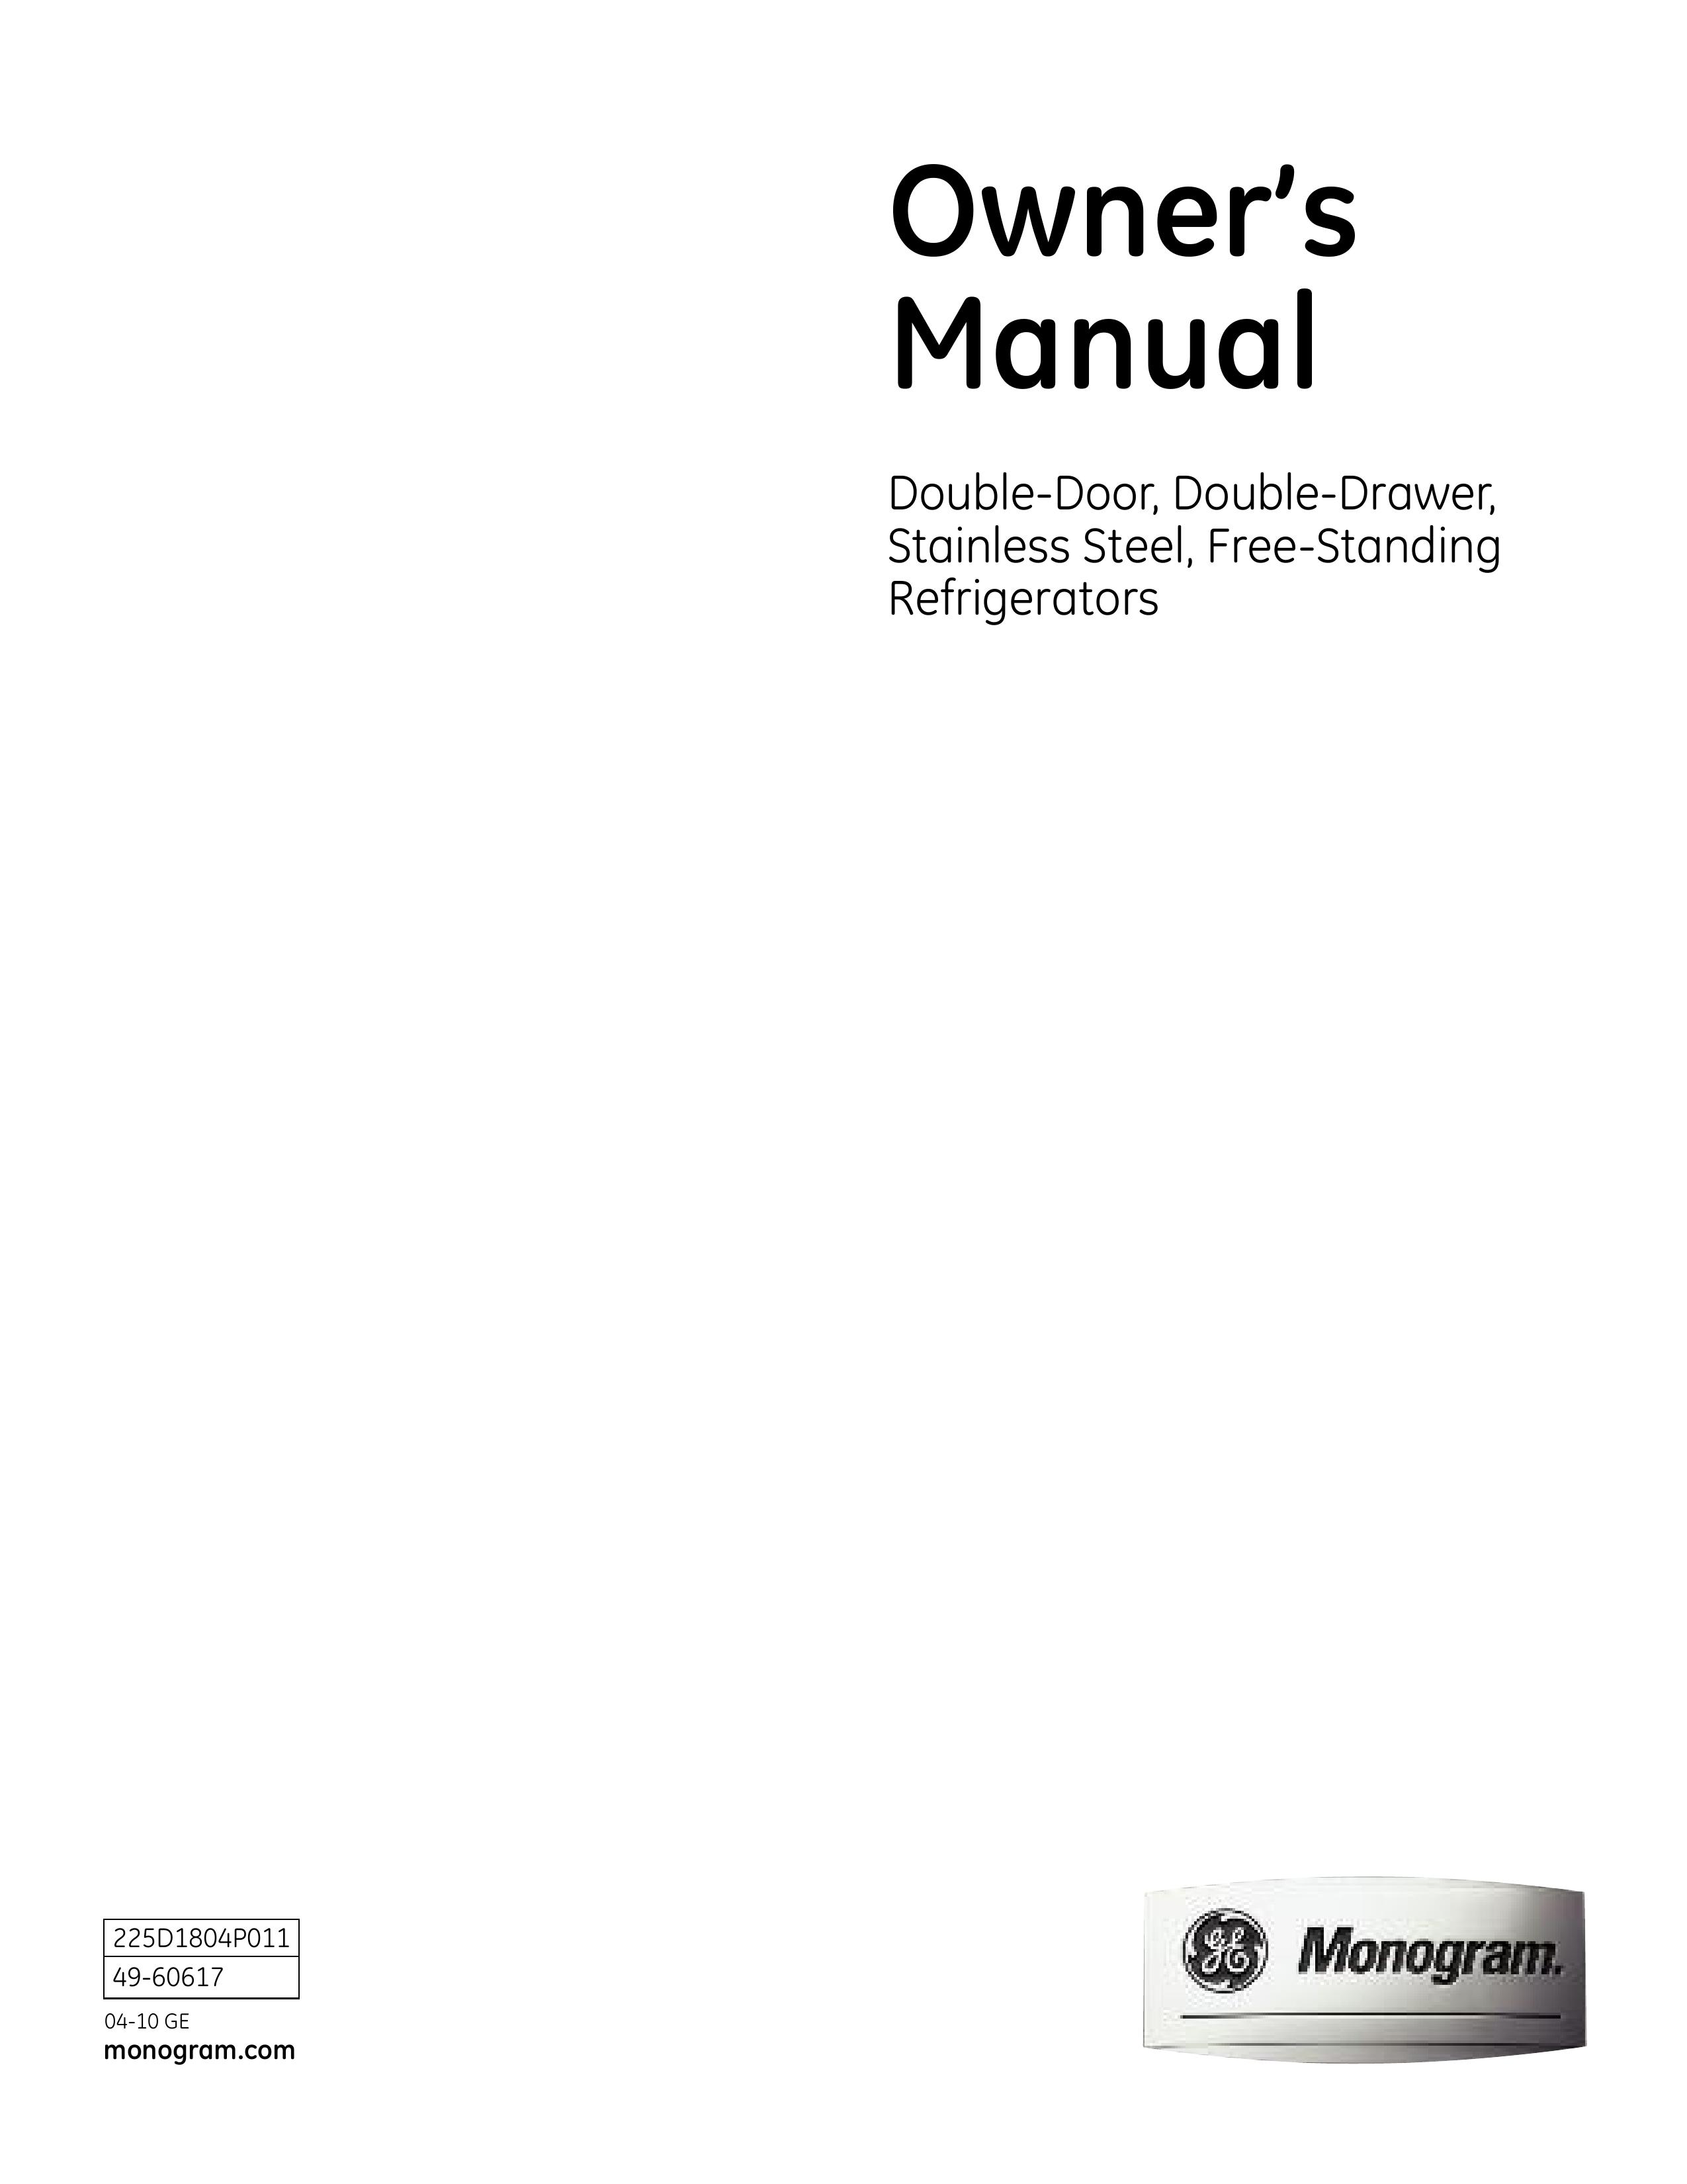 GE Monogram 225D1804P011 Refrigerator User Manual